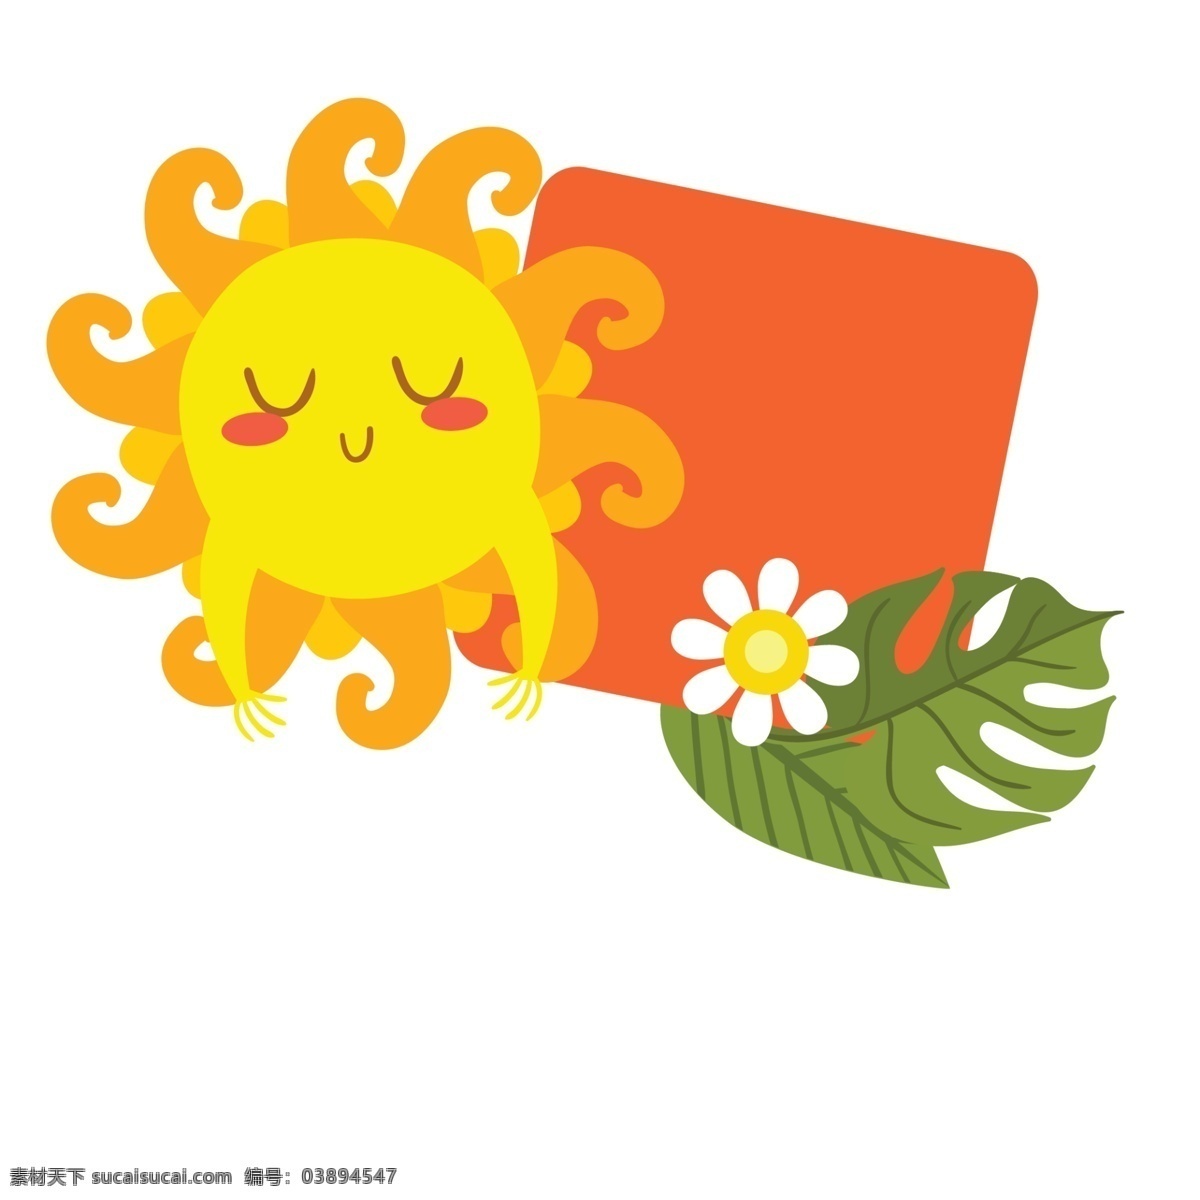 可爱 橙色 边框 太阳 公公 免 抠 图 太阳卡通边框 白色花 叶子 太阳公公 水果 可爱的边框 卡通